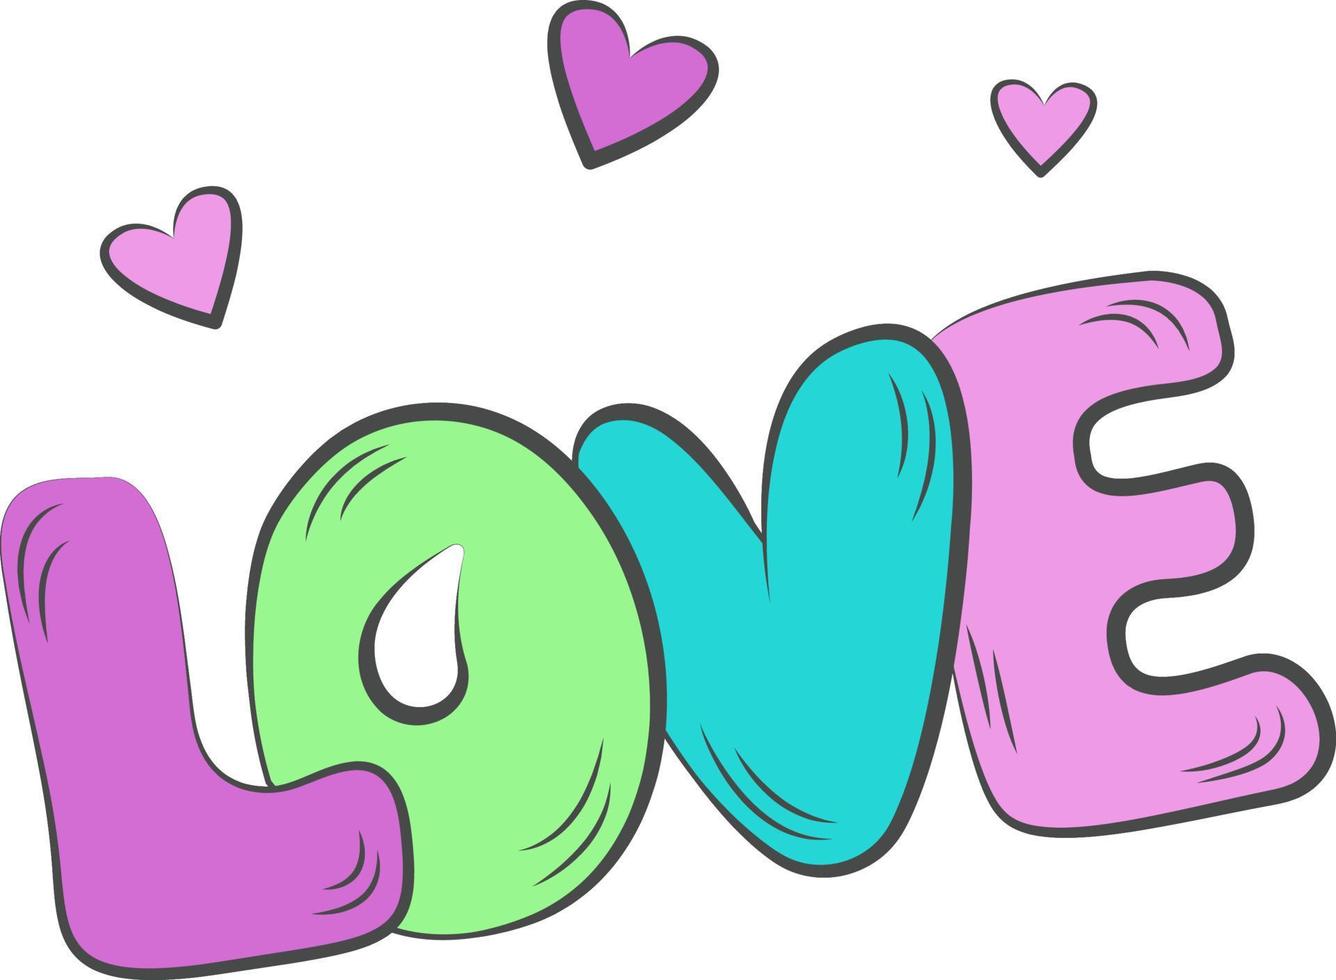 l'amour. l'inscription sur l'amour aux couleurs pastel. illustration vectorielle de lettrage pour affiche, carte postale, bannière saint valentin, mariage. le mot dessiné à la main est l'amour avec les cœurs. imprimer . vecteur